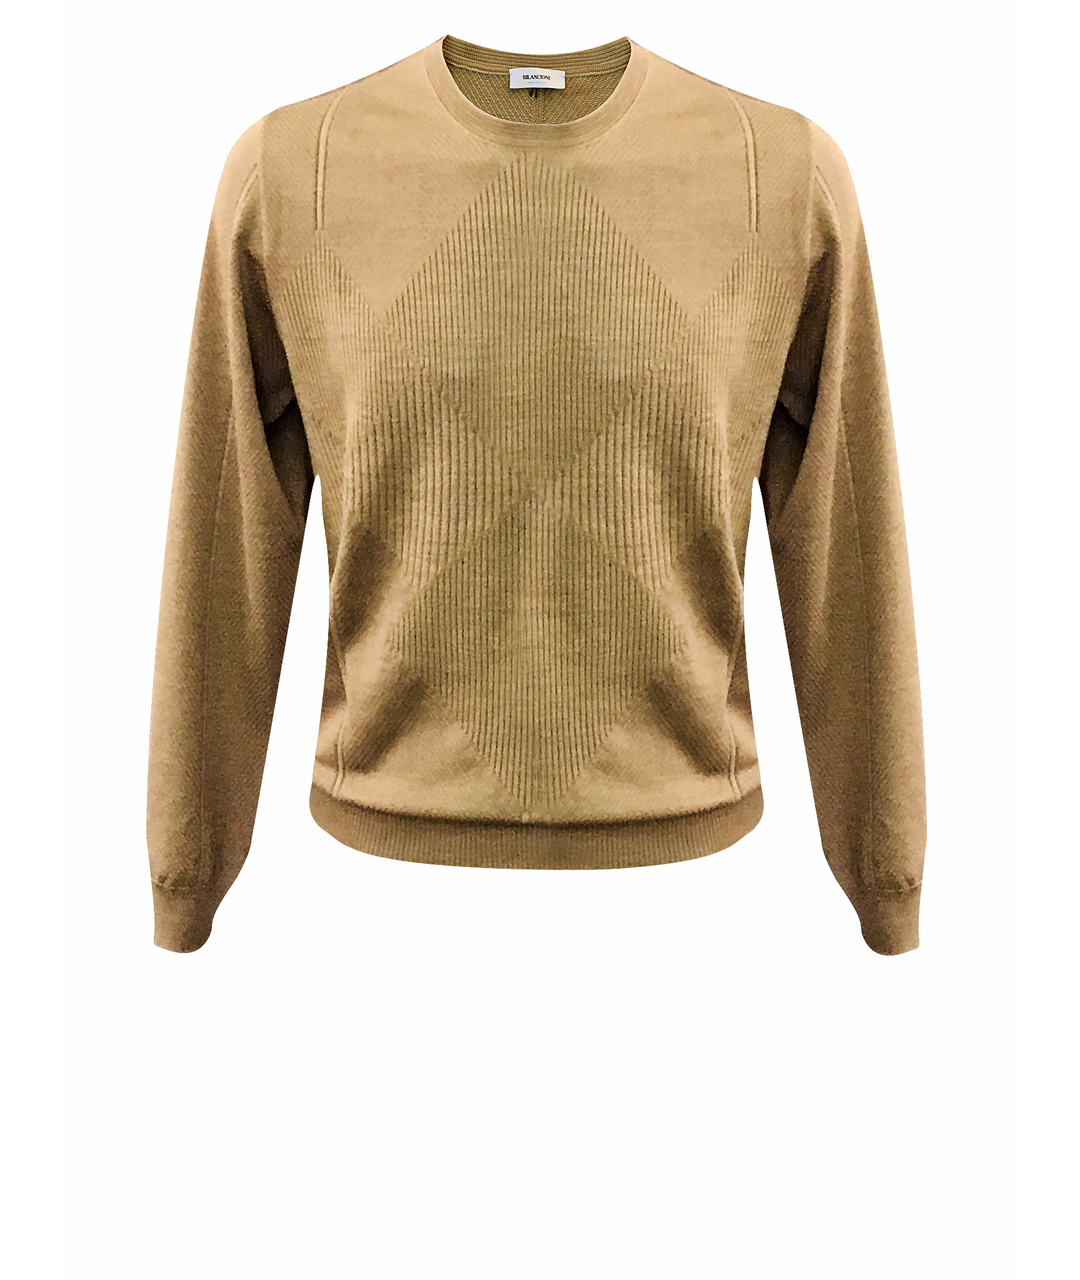 BILANCIONI Коричневый шерстяной джемпер / свитер, фото 1